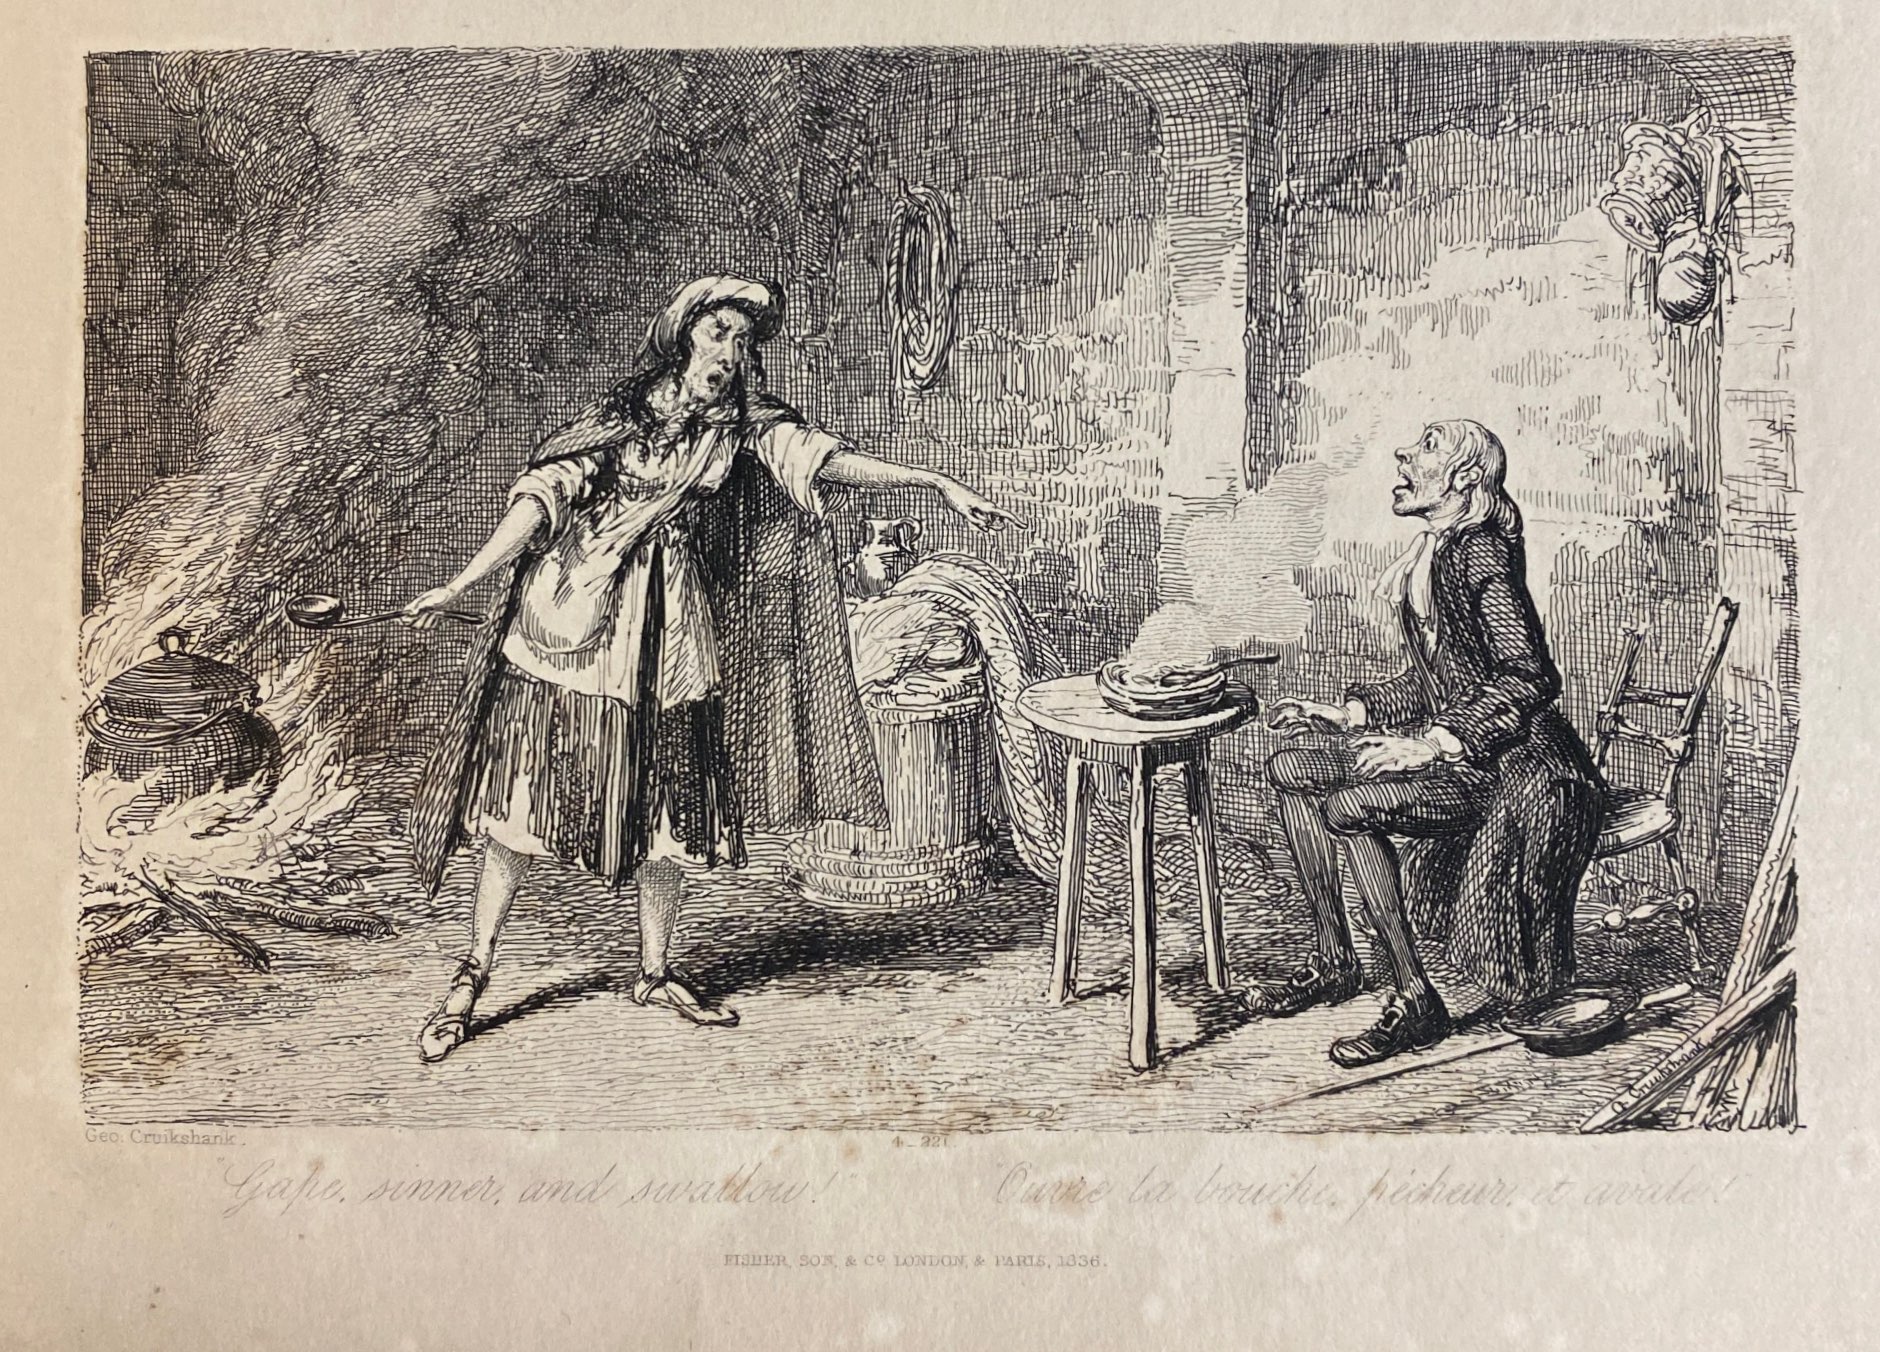 A woman yells at a man seated at a table